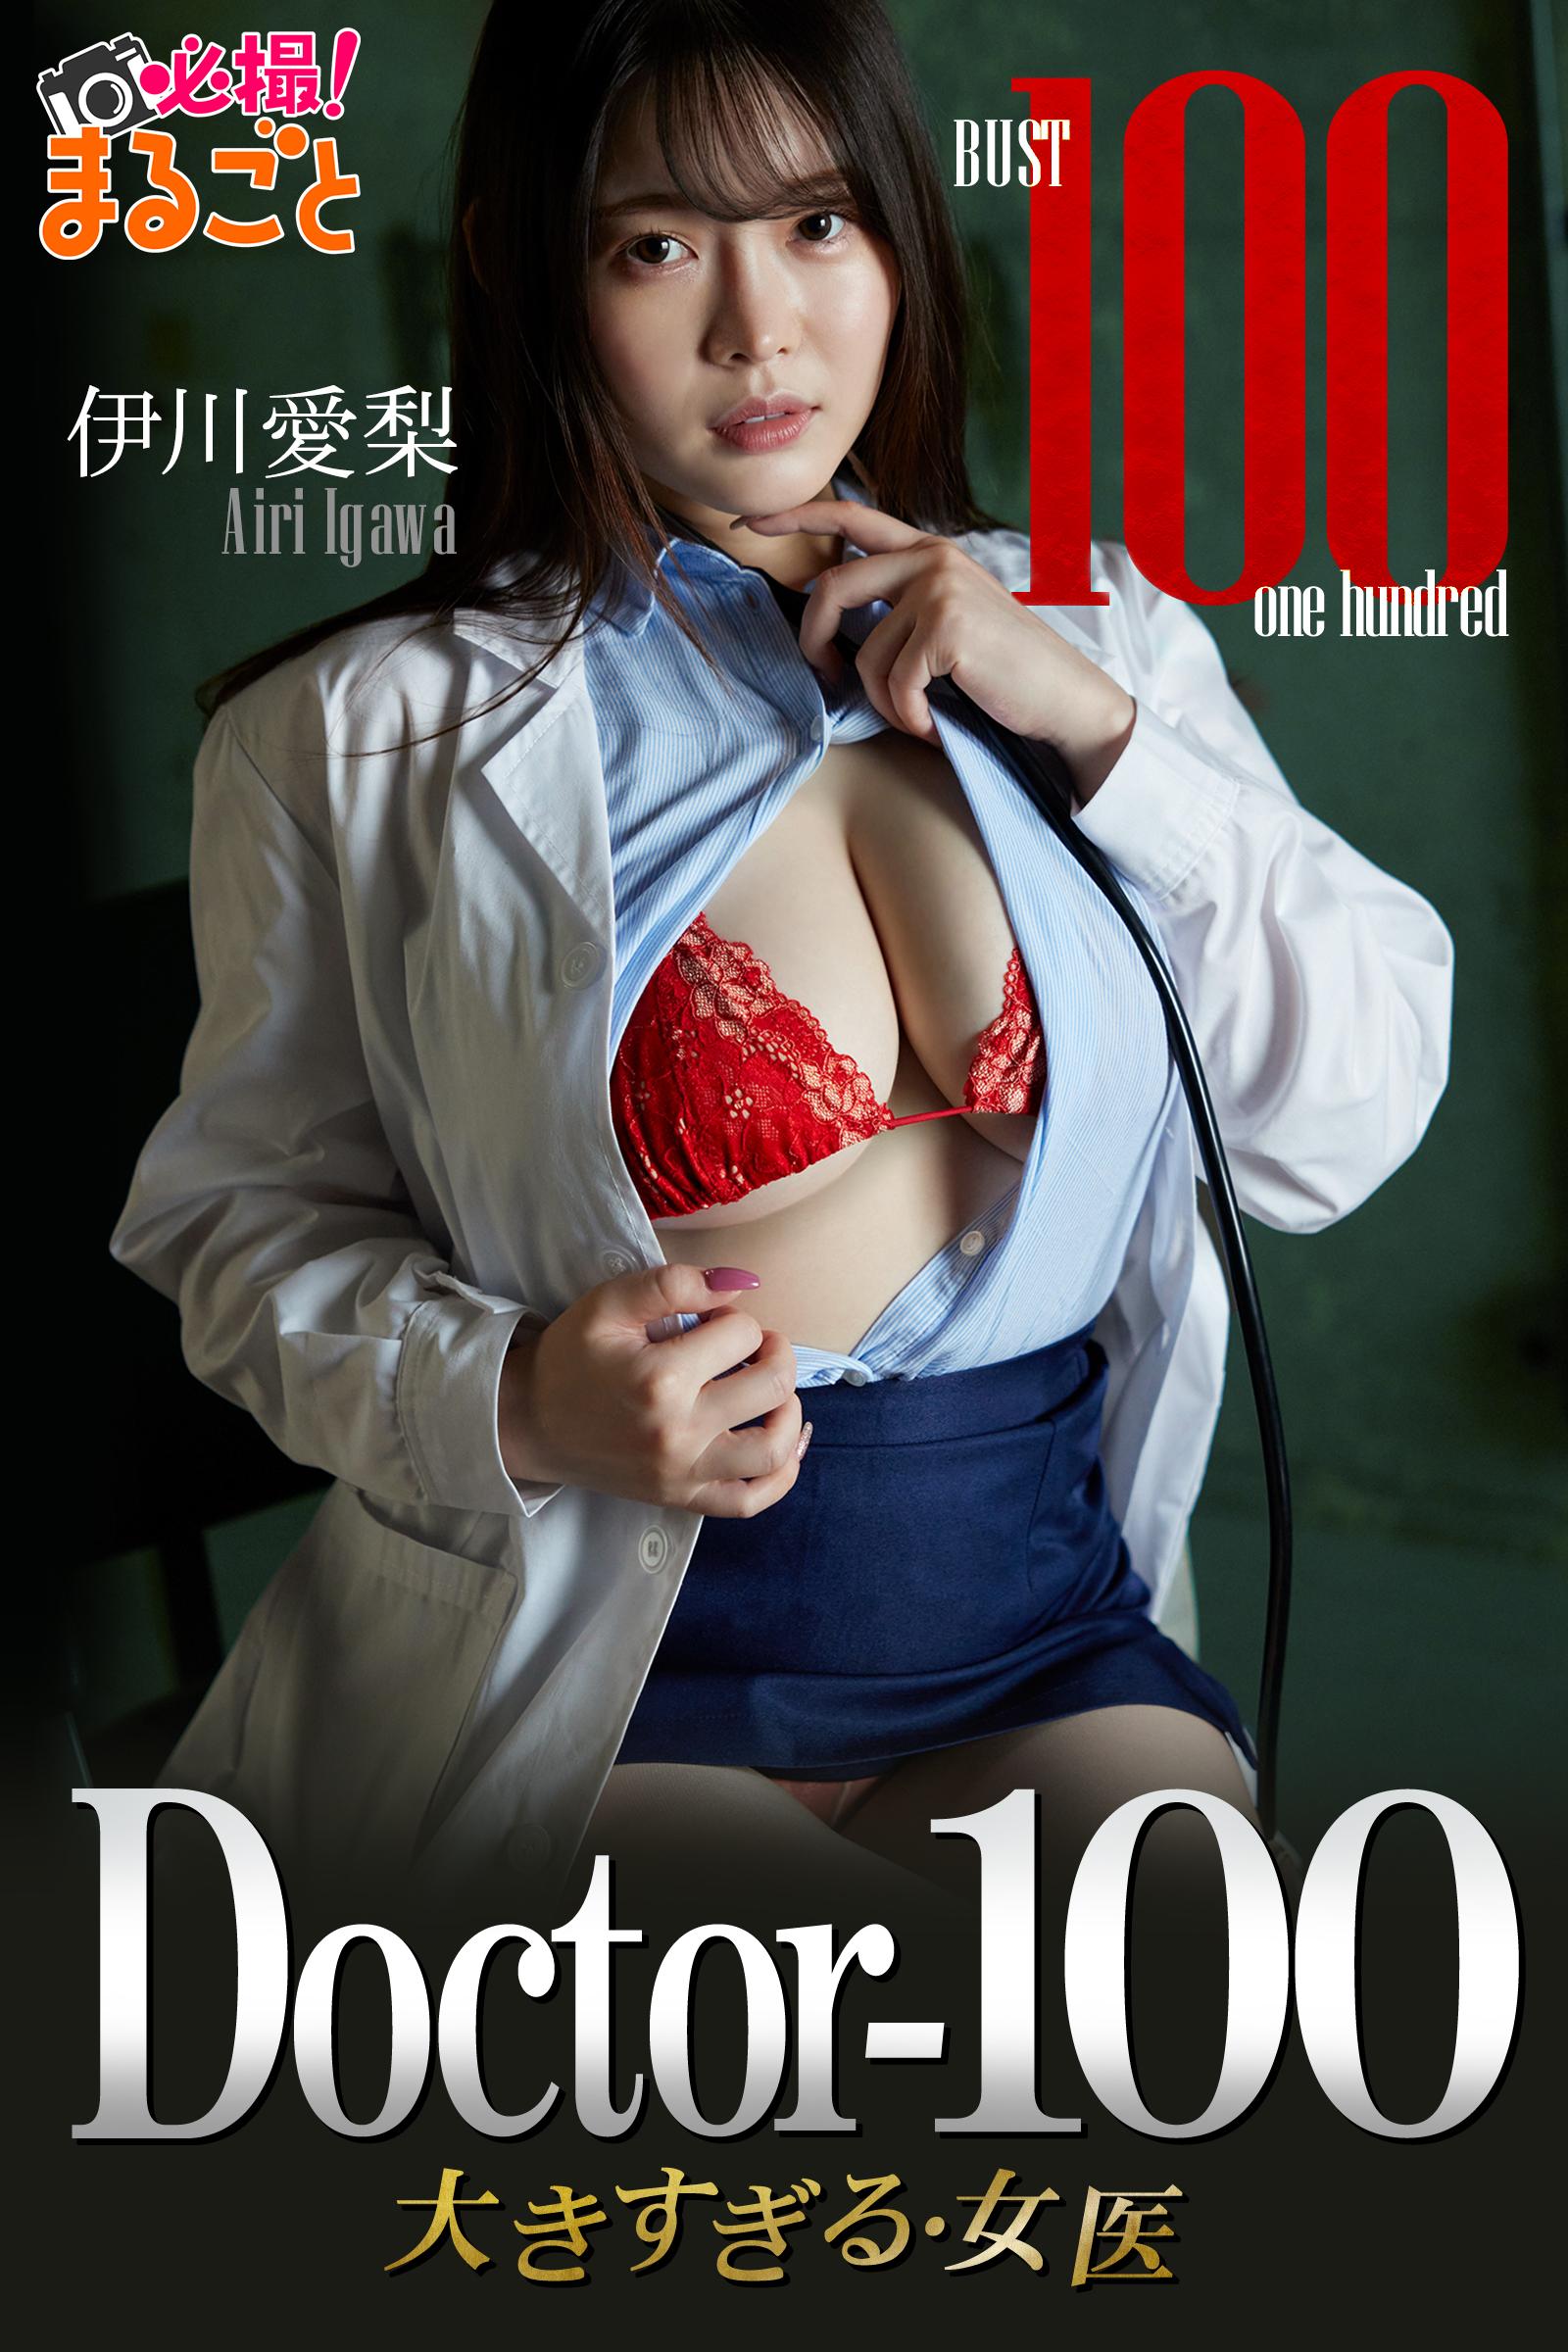 Doctor-100 大きすぎる女医　伊川愛梨